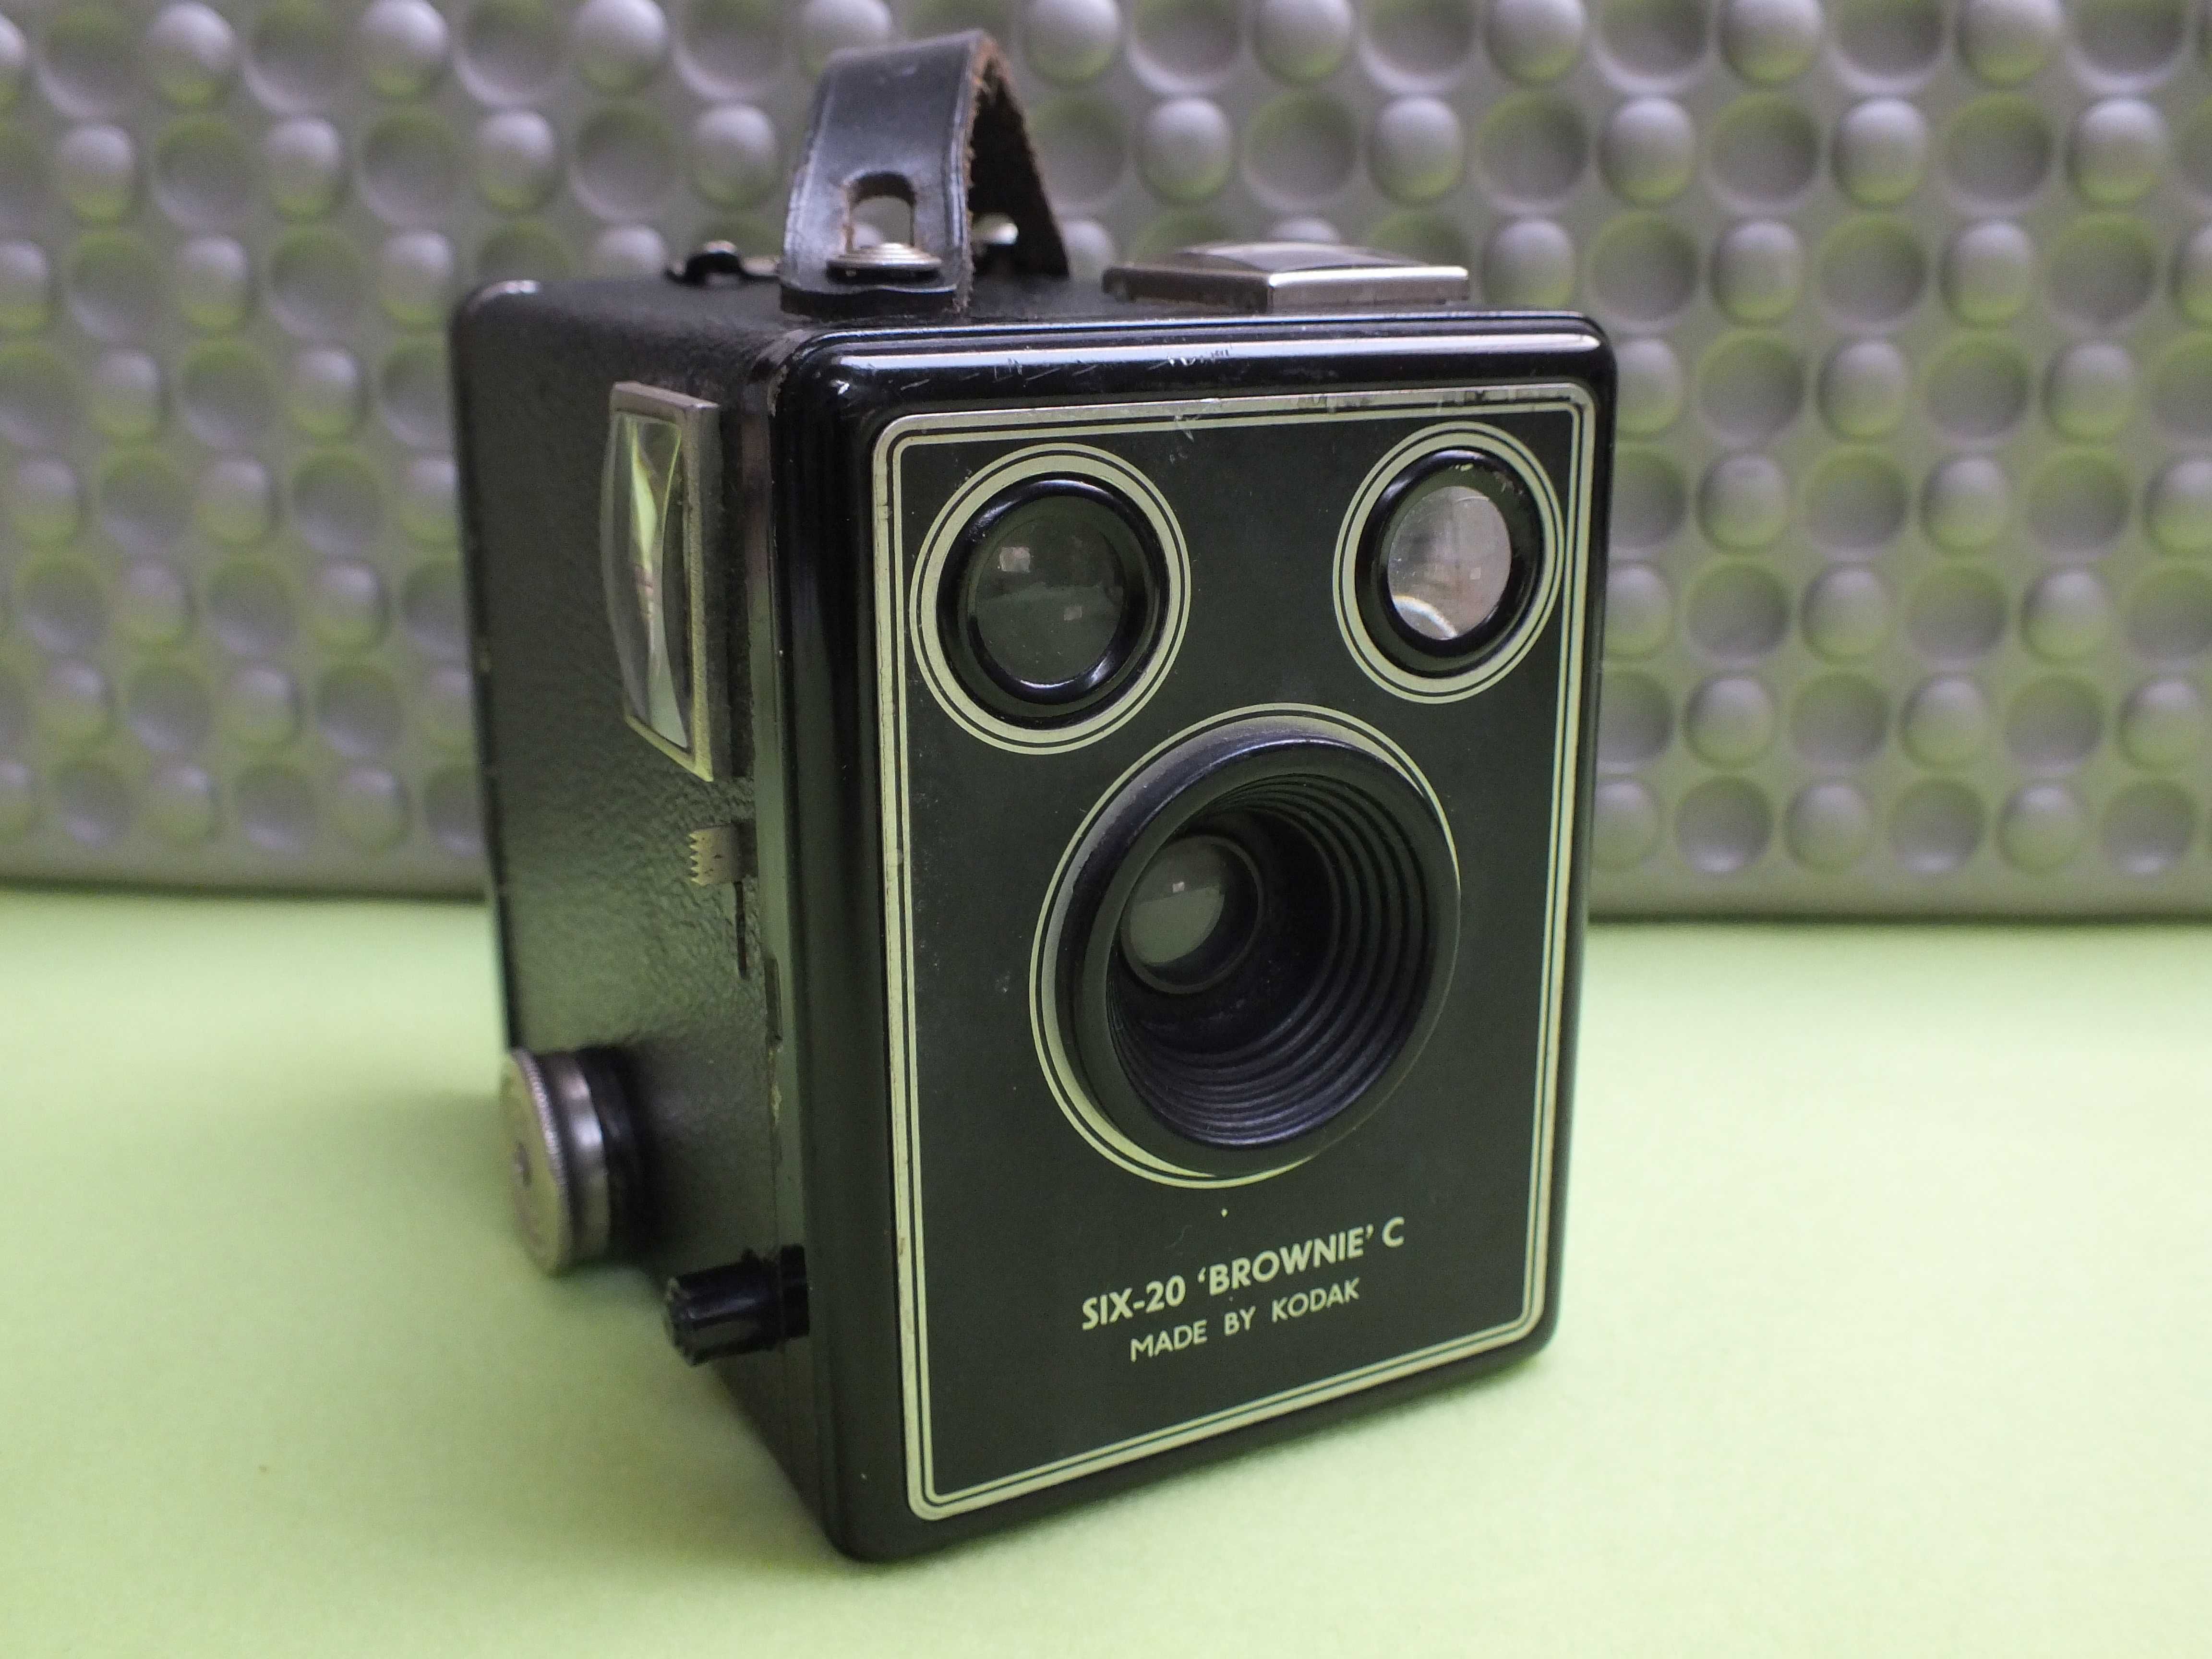 Stary aparat skrzynkowy KODAK SIX -20 BROWNIE C made by Kodak London